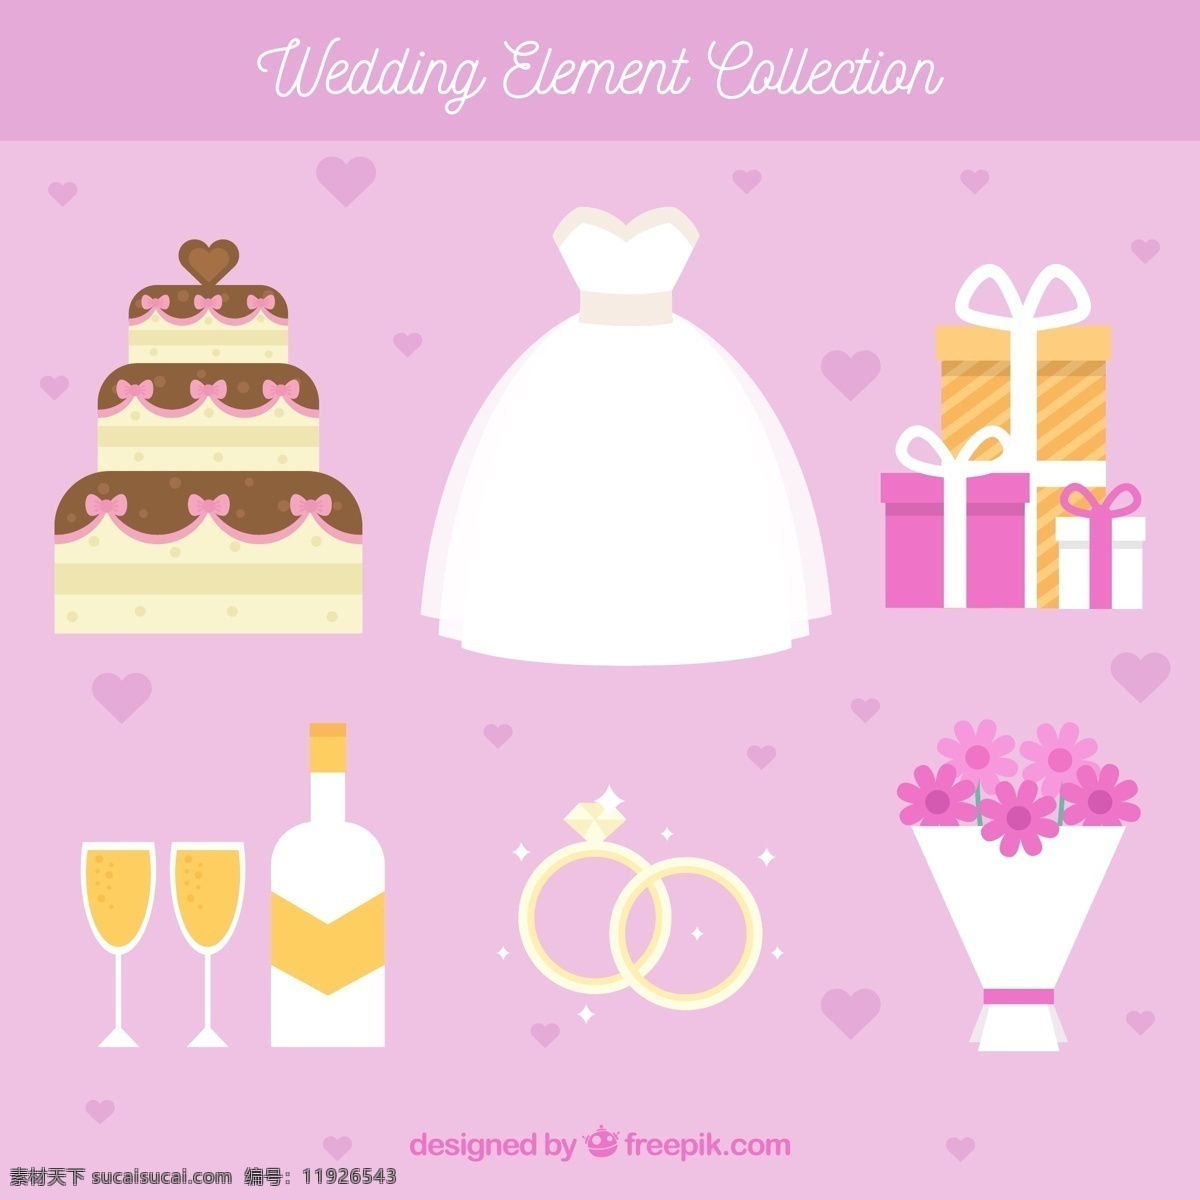 婚礼 蛋糕 元素 平面设计 婚礼蛋糕 其他元素 平面设计素材